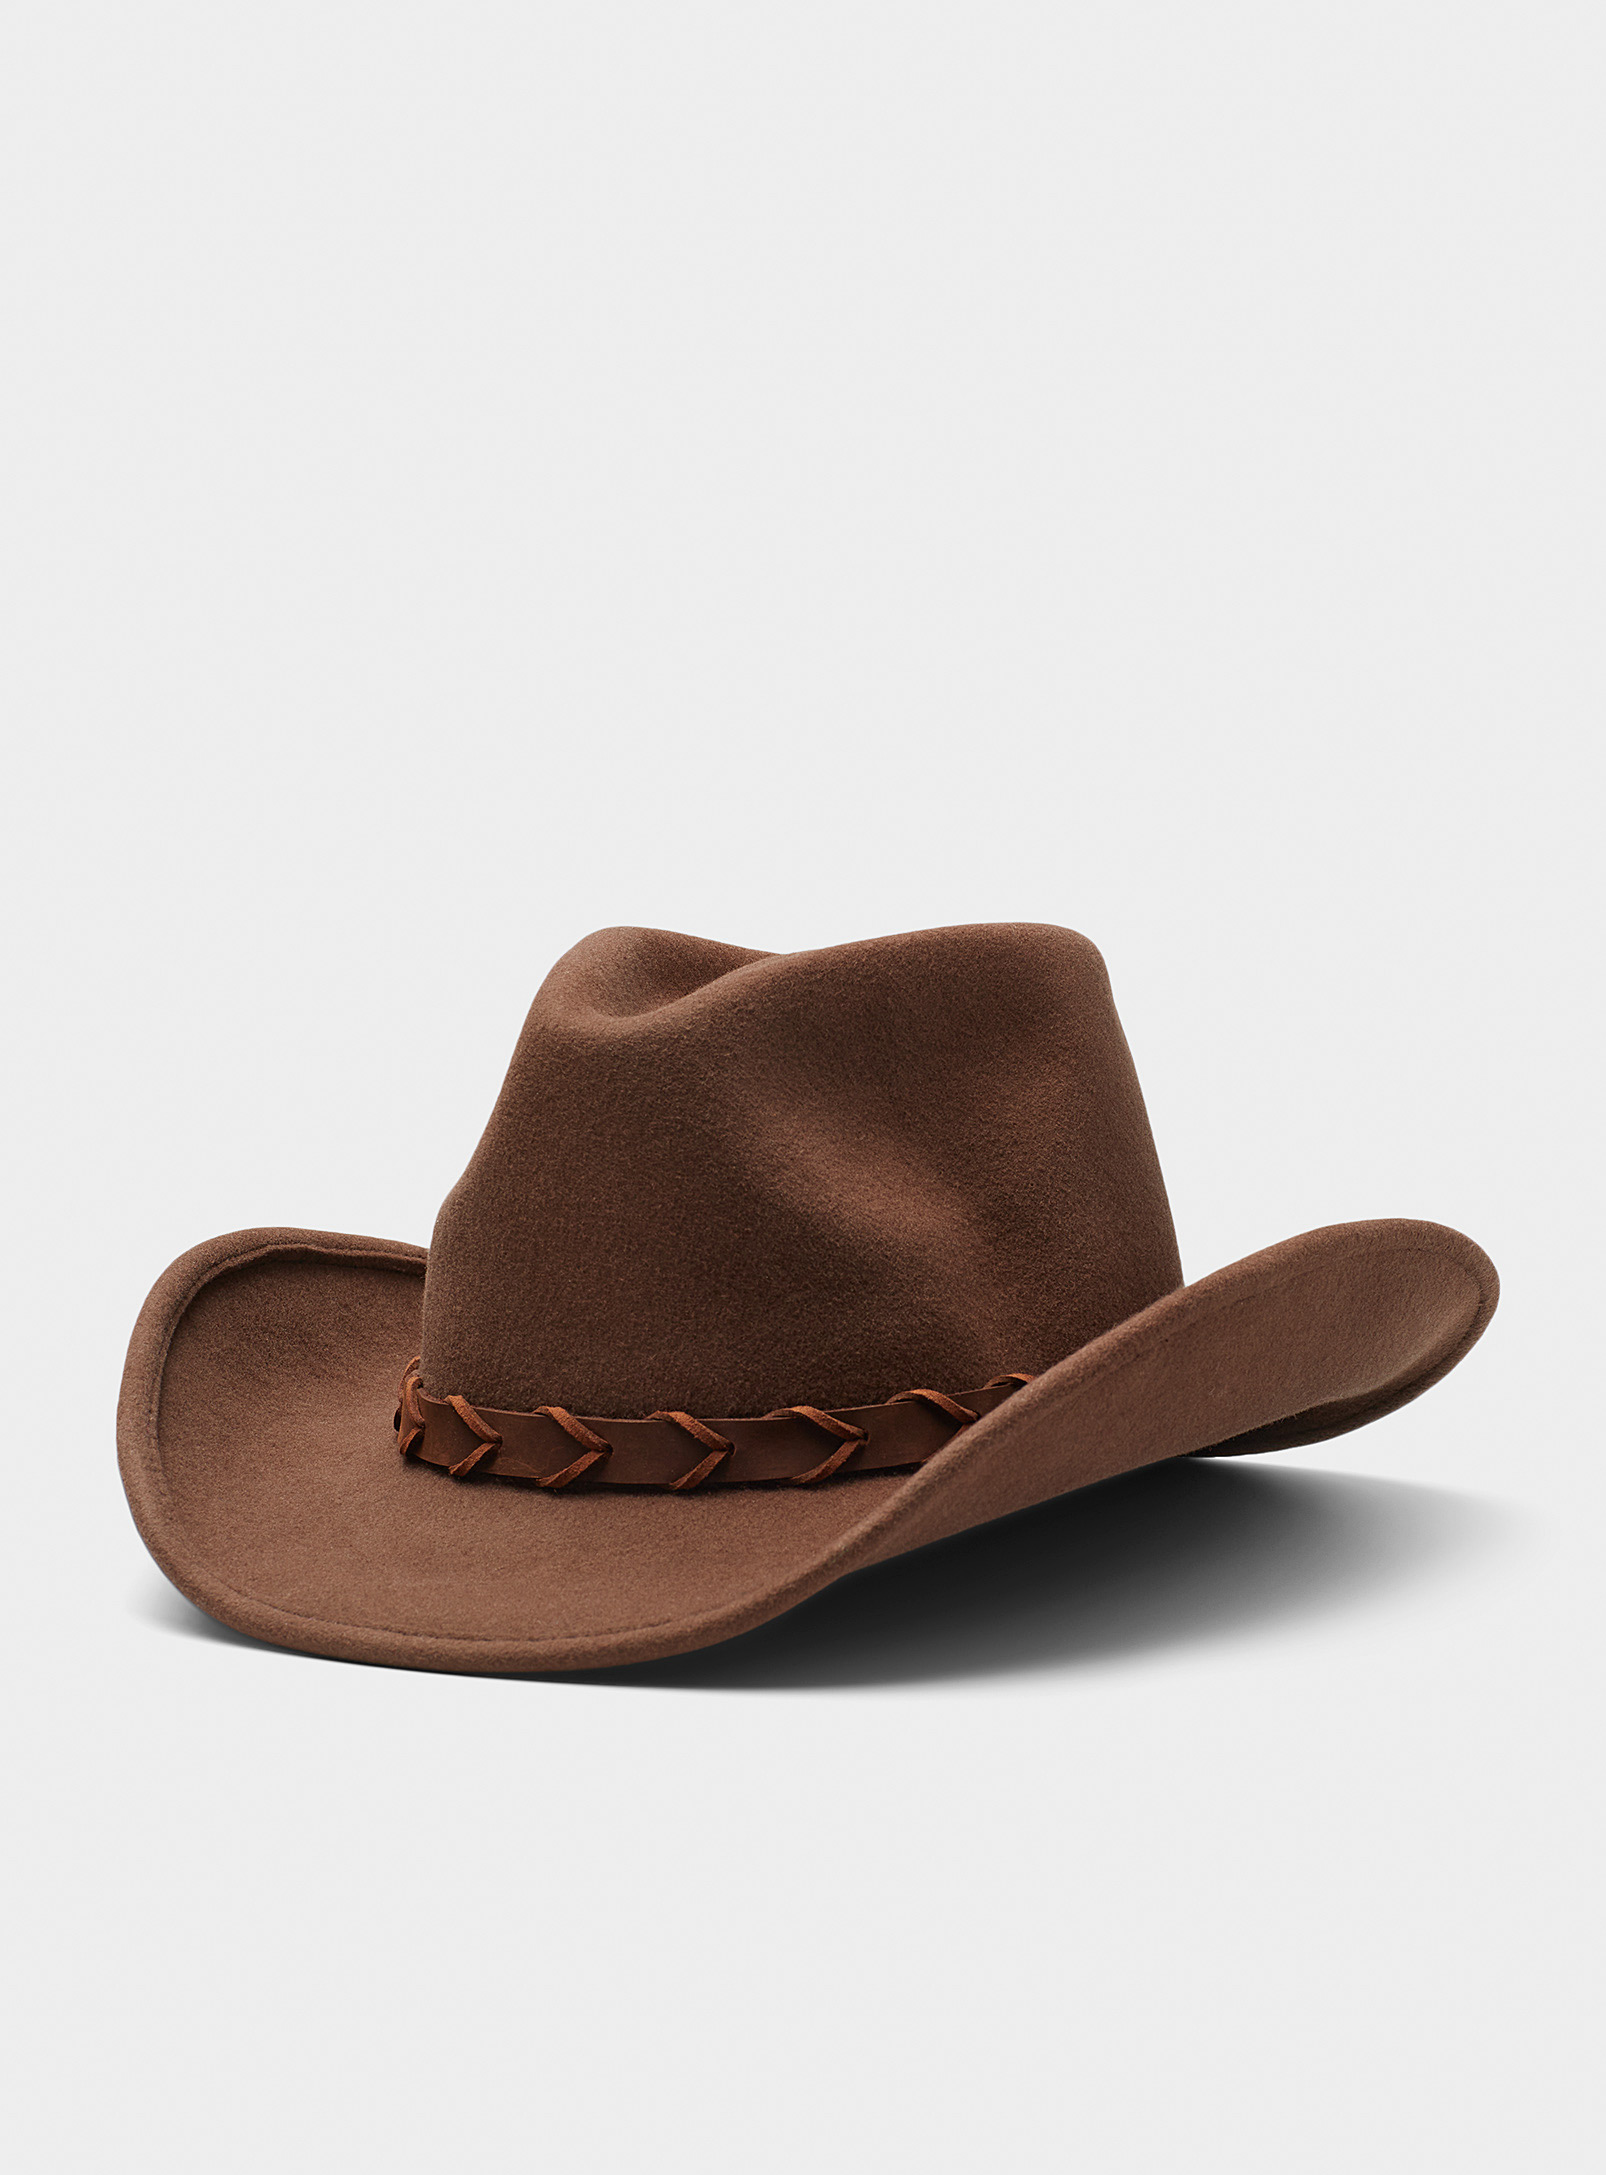 Peter Grimm - Le chapeau cowboy feutré ruban cuir